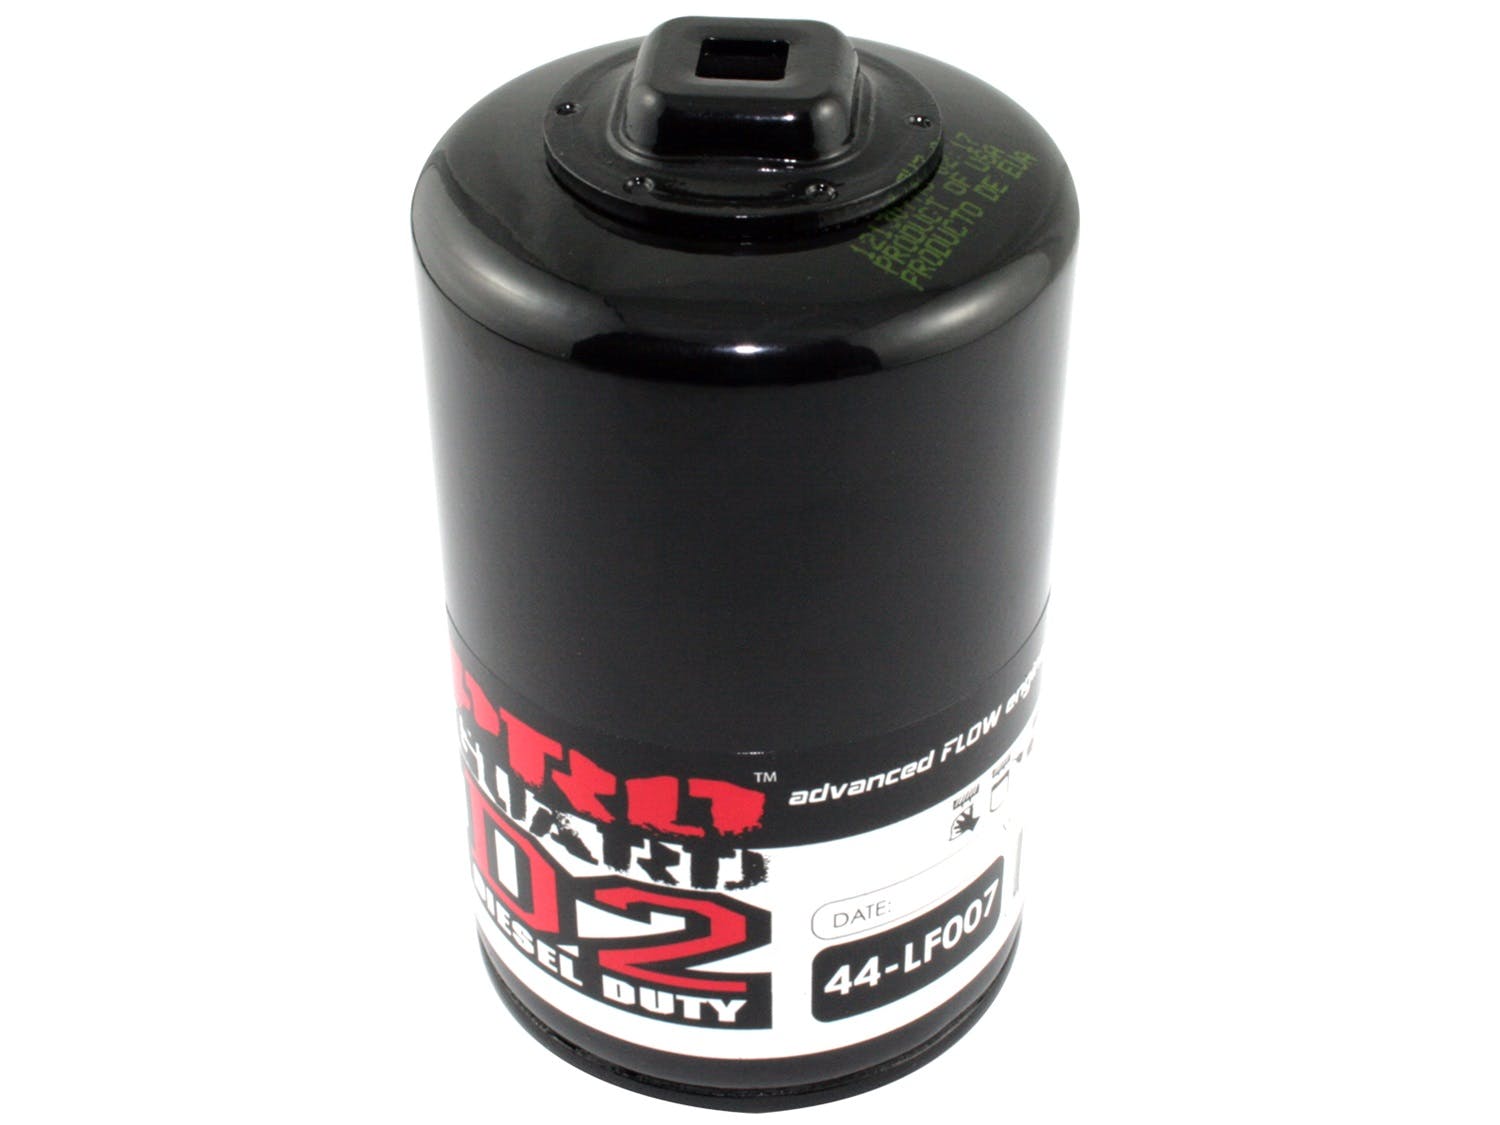 AFE 44-LF007 Pro-GUARD D2 Oil Filter